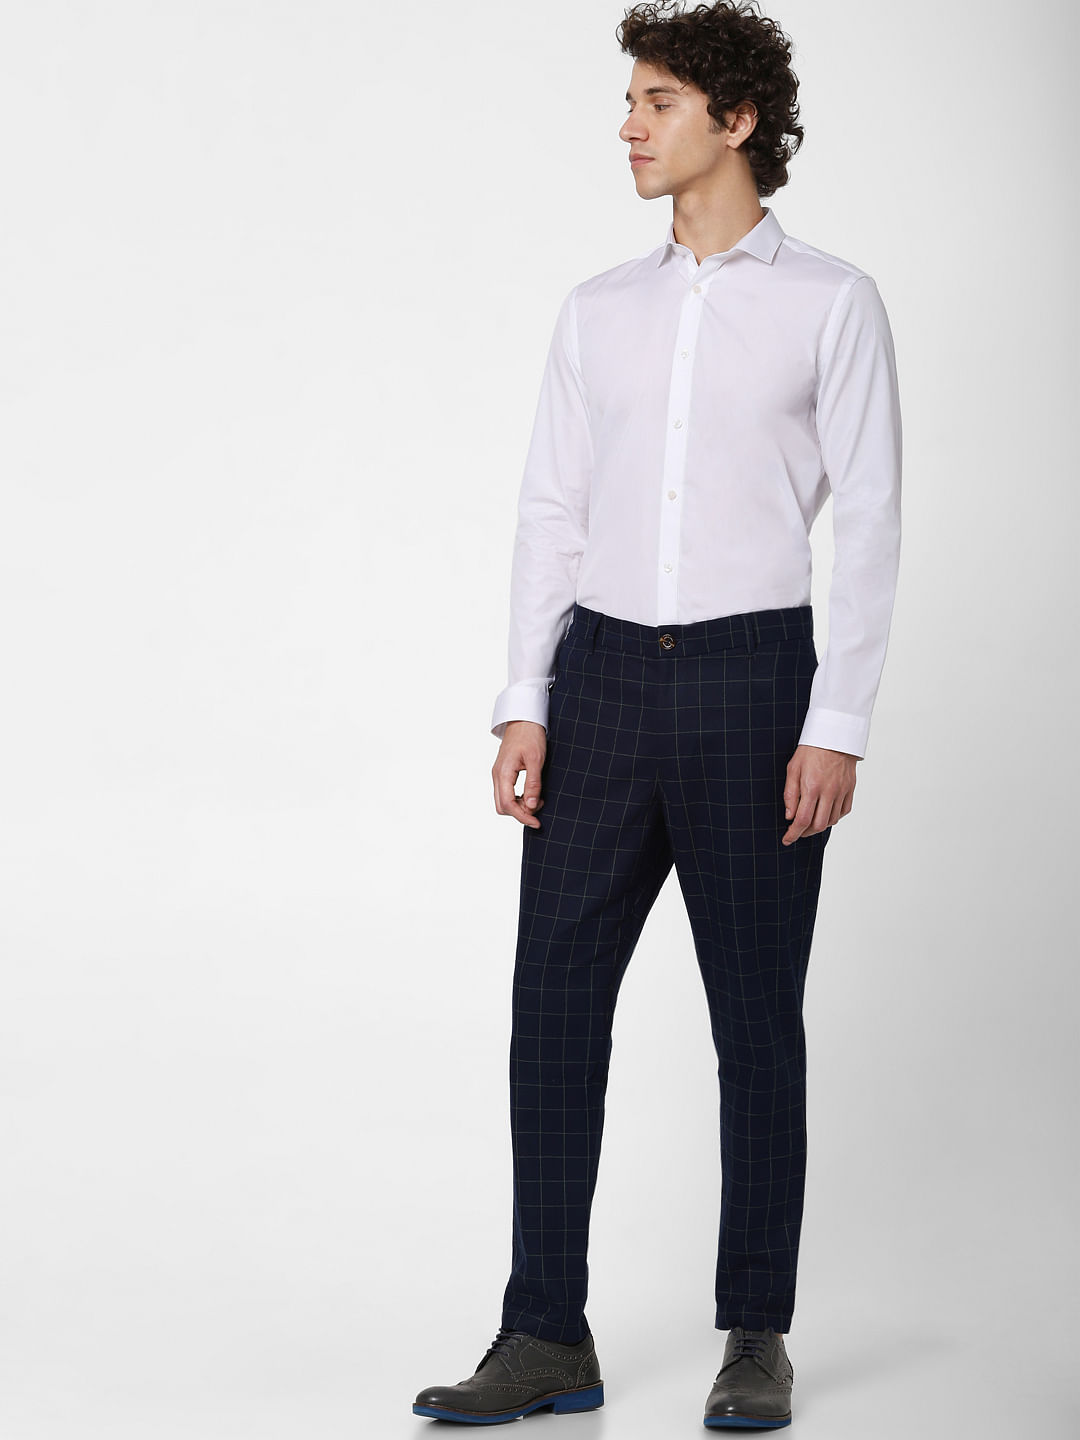 Buy Beige Linen WideLeg Formal Trousers Online  FableStreet